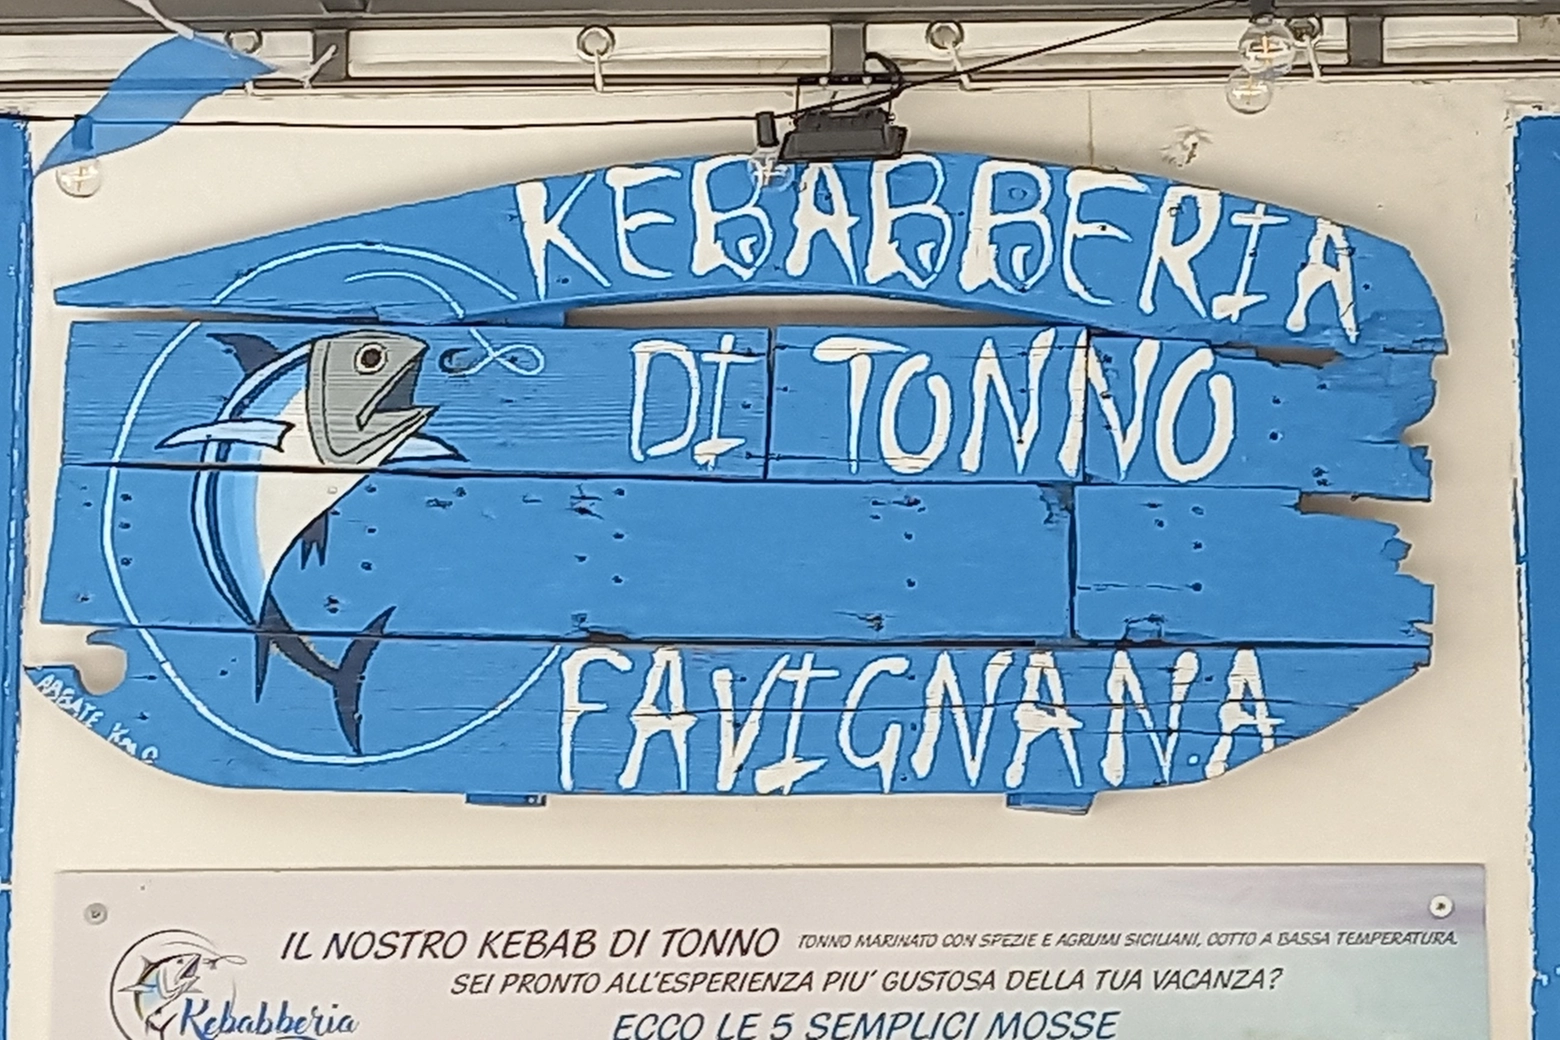 La Kebabberia di tonno a Favignana: tonno rosso nell'insalatona, nel panino ed anche come 'salsiccia'